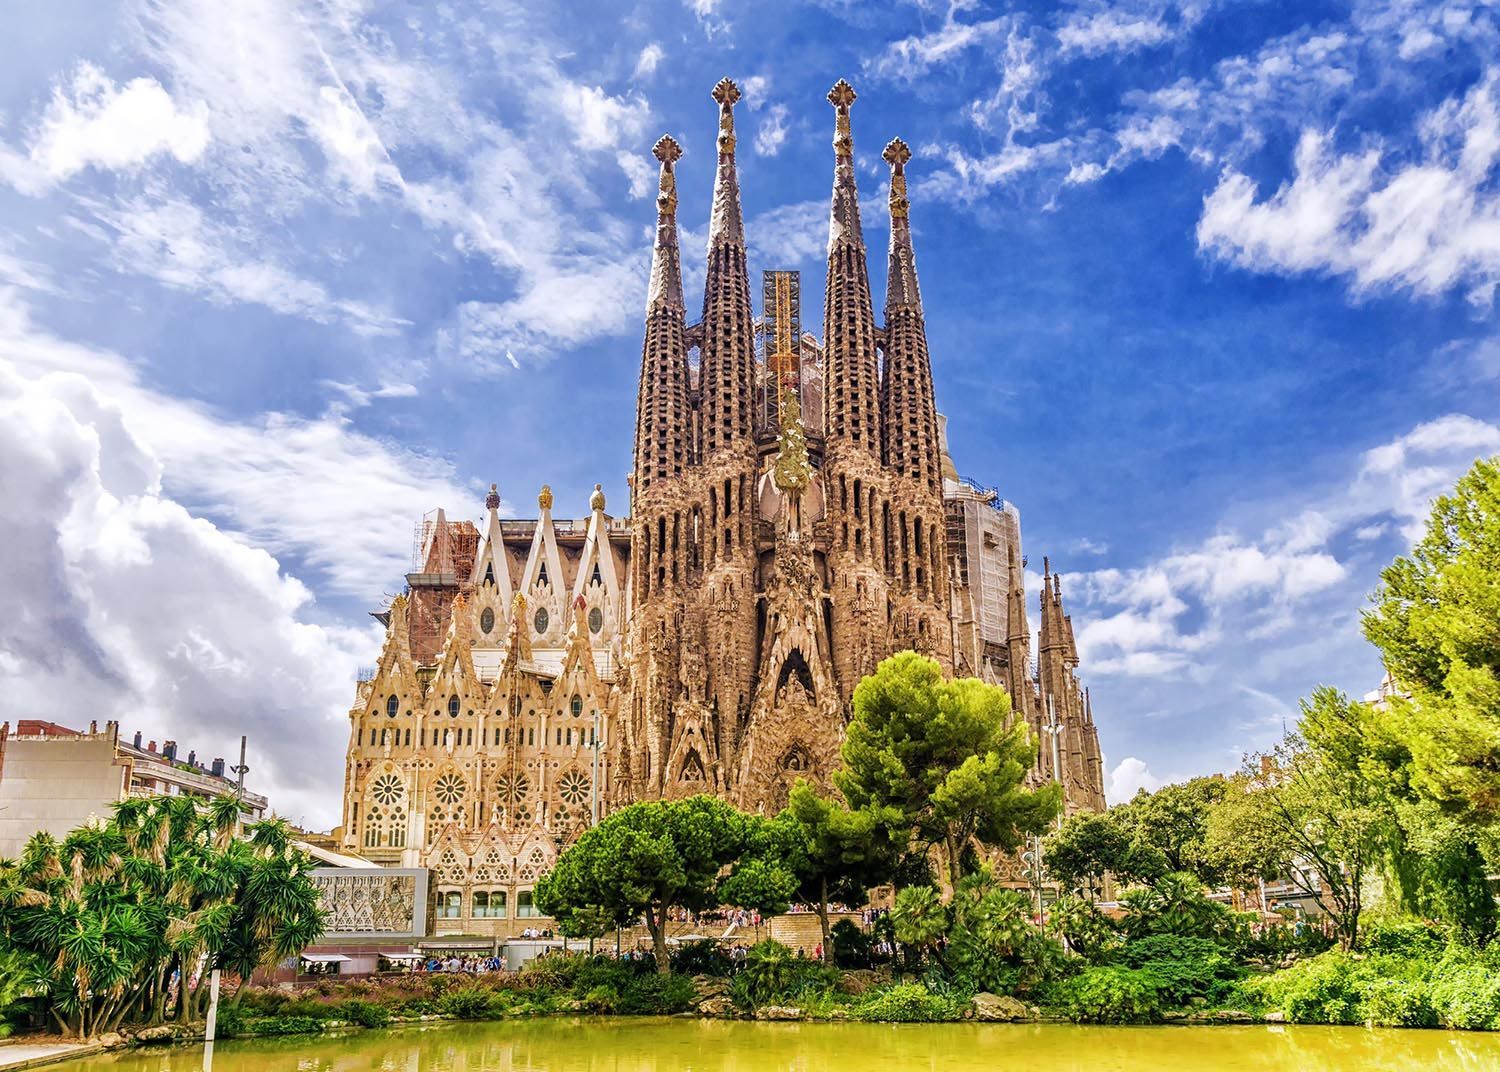 La catedral de la sagrada familia de barcelona está rodeada de árboles y un lago.